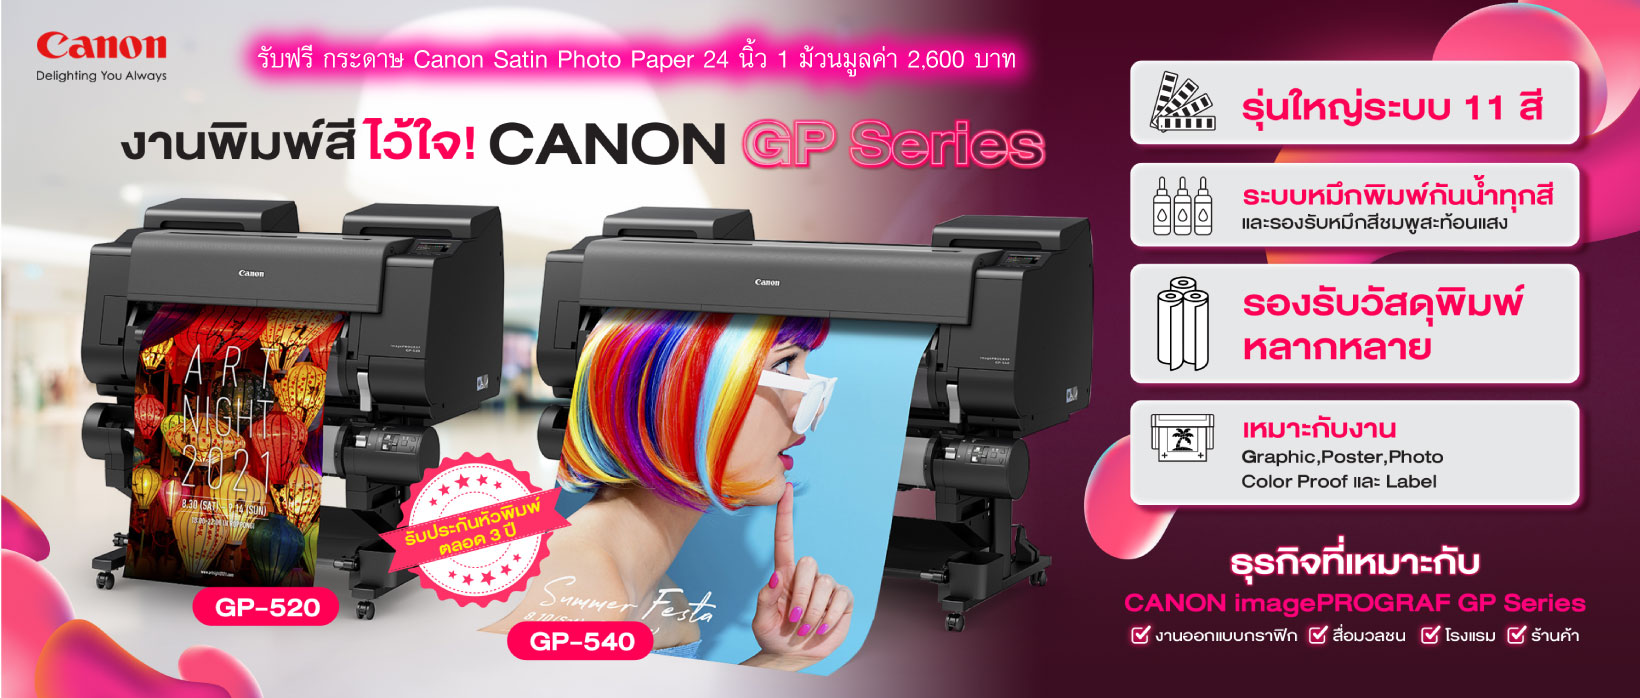 Canon GP-540